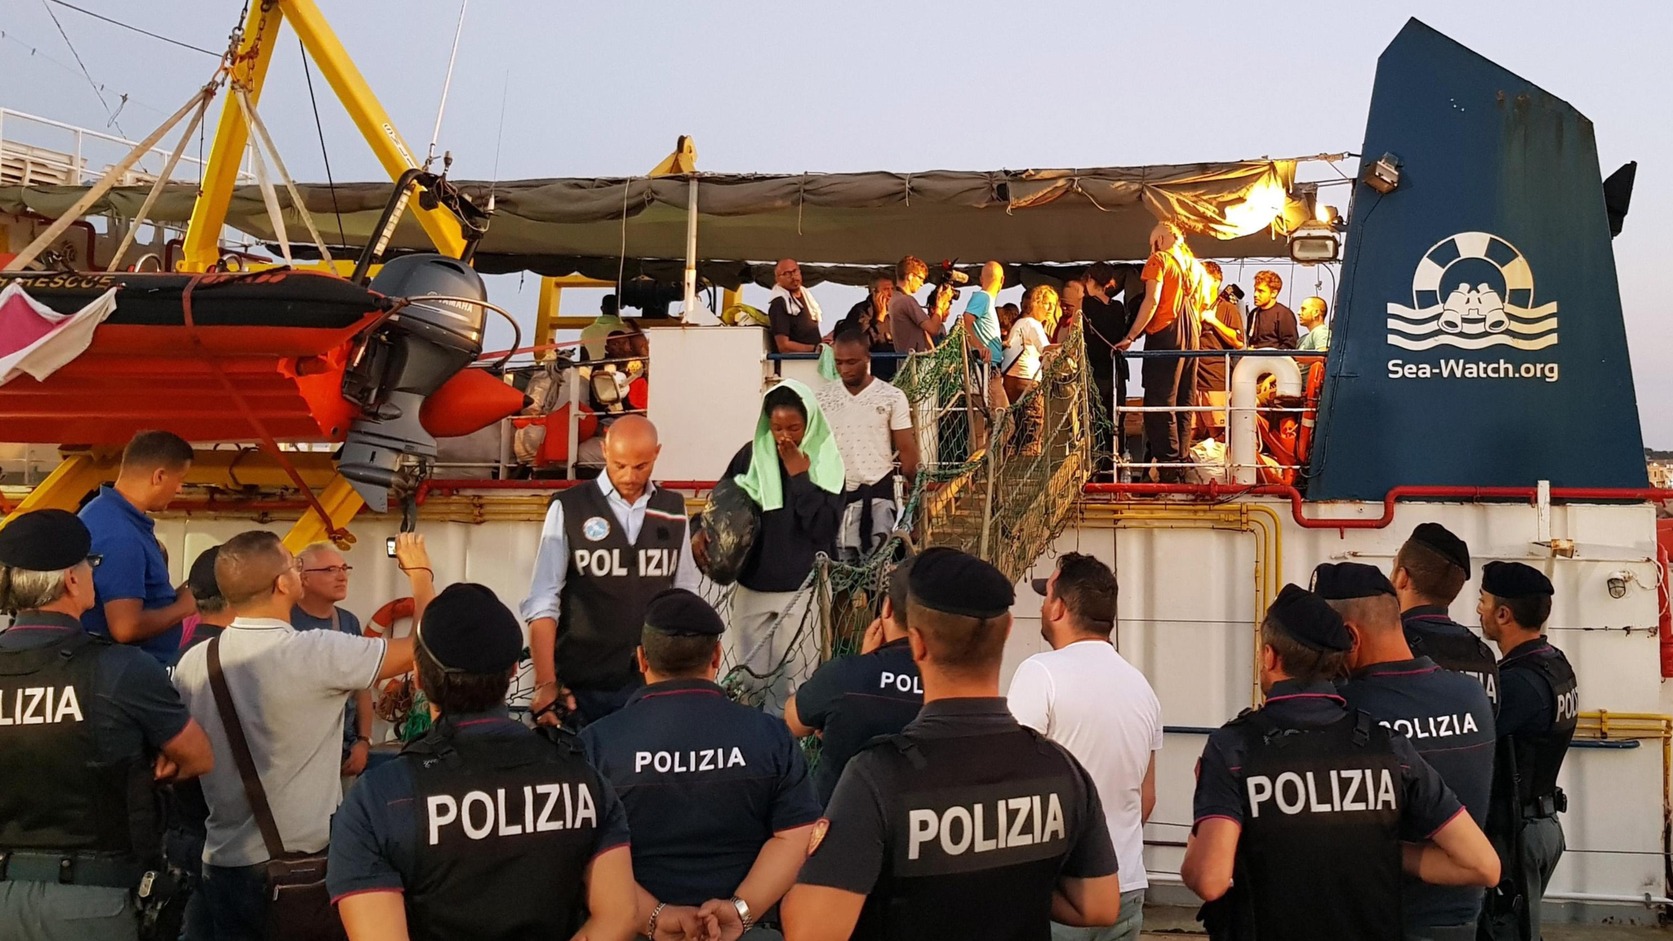 Sea-Watch szóvivője: Az olasz hatóságok nem tilthatják meg egy bajban levő hajó kikötését